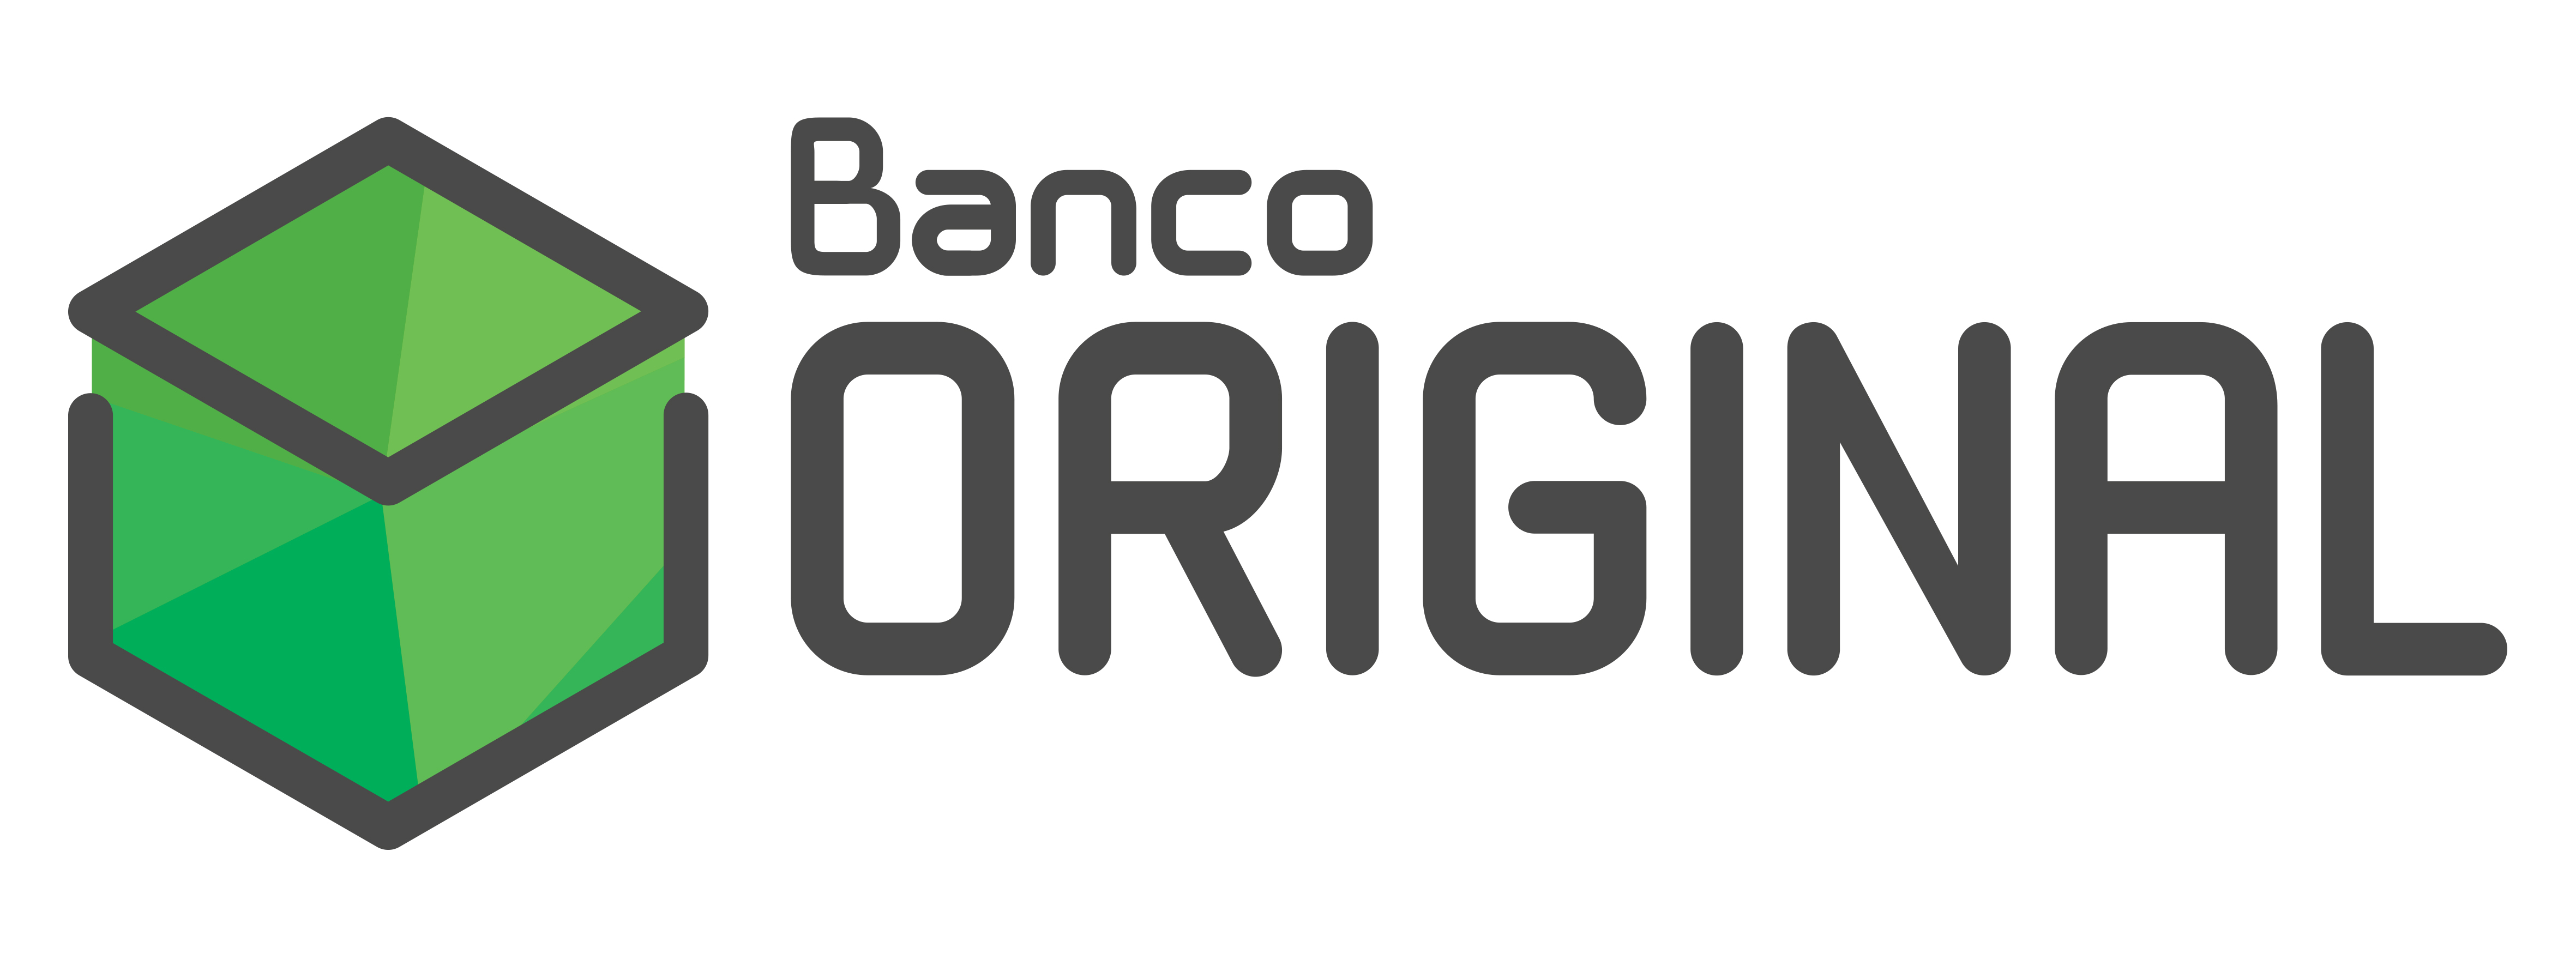 Banco Original Logo photo - 1